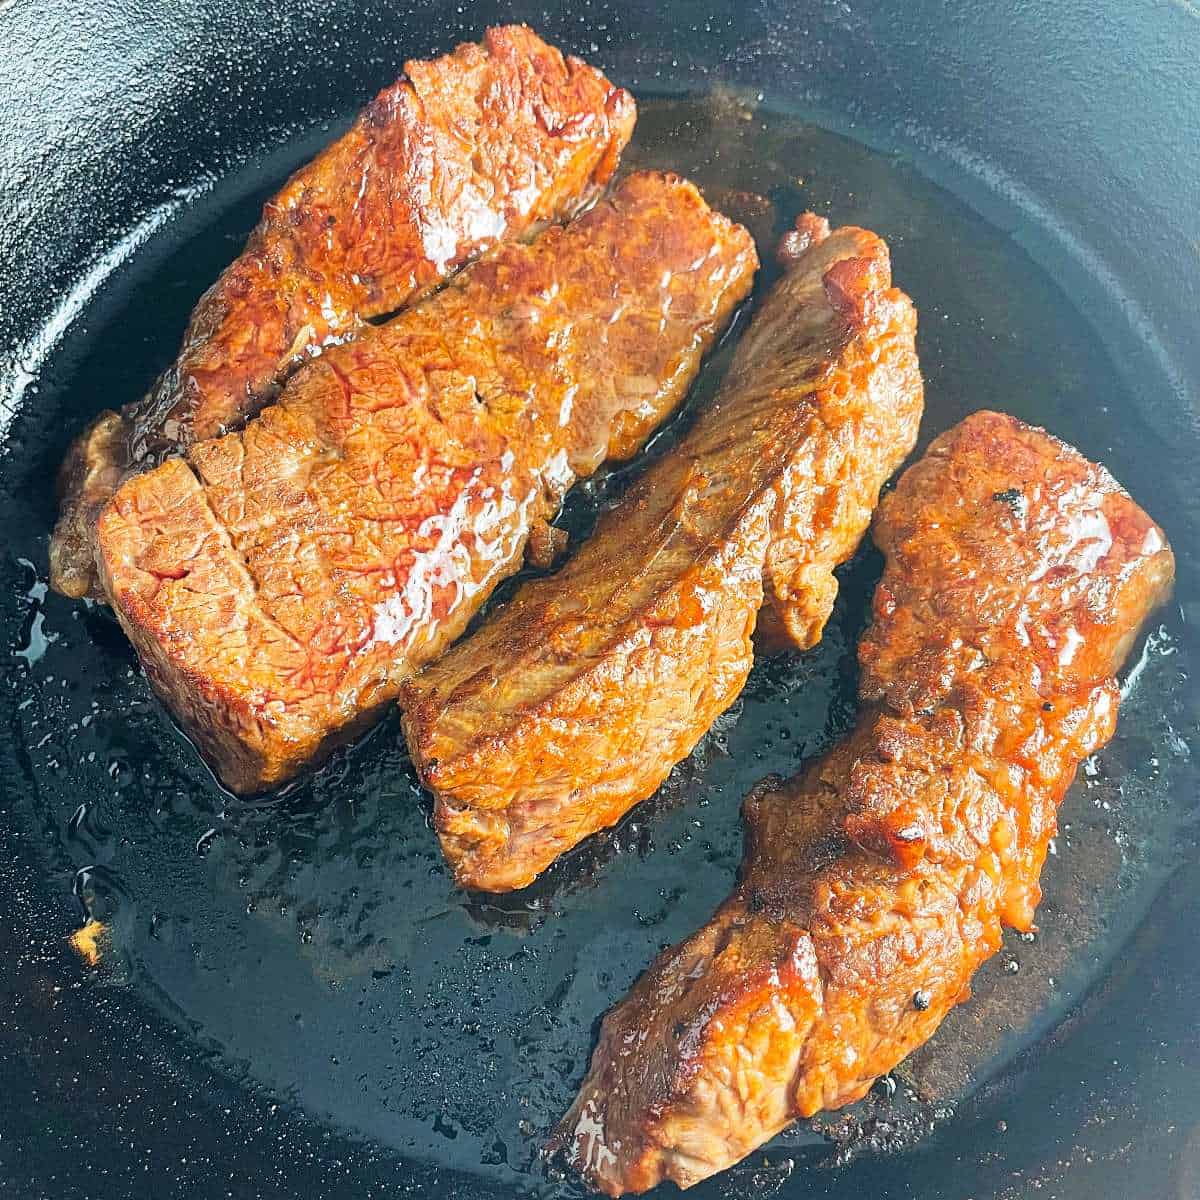 BBQ baked steak tips in a black skillet.